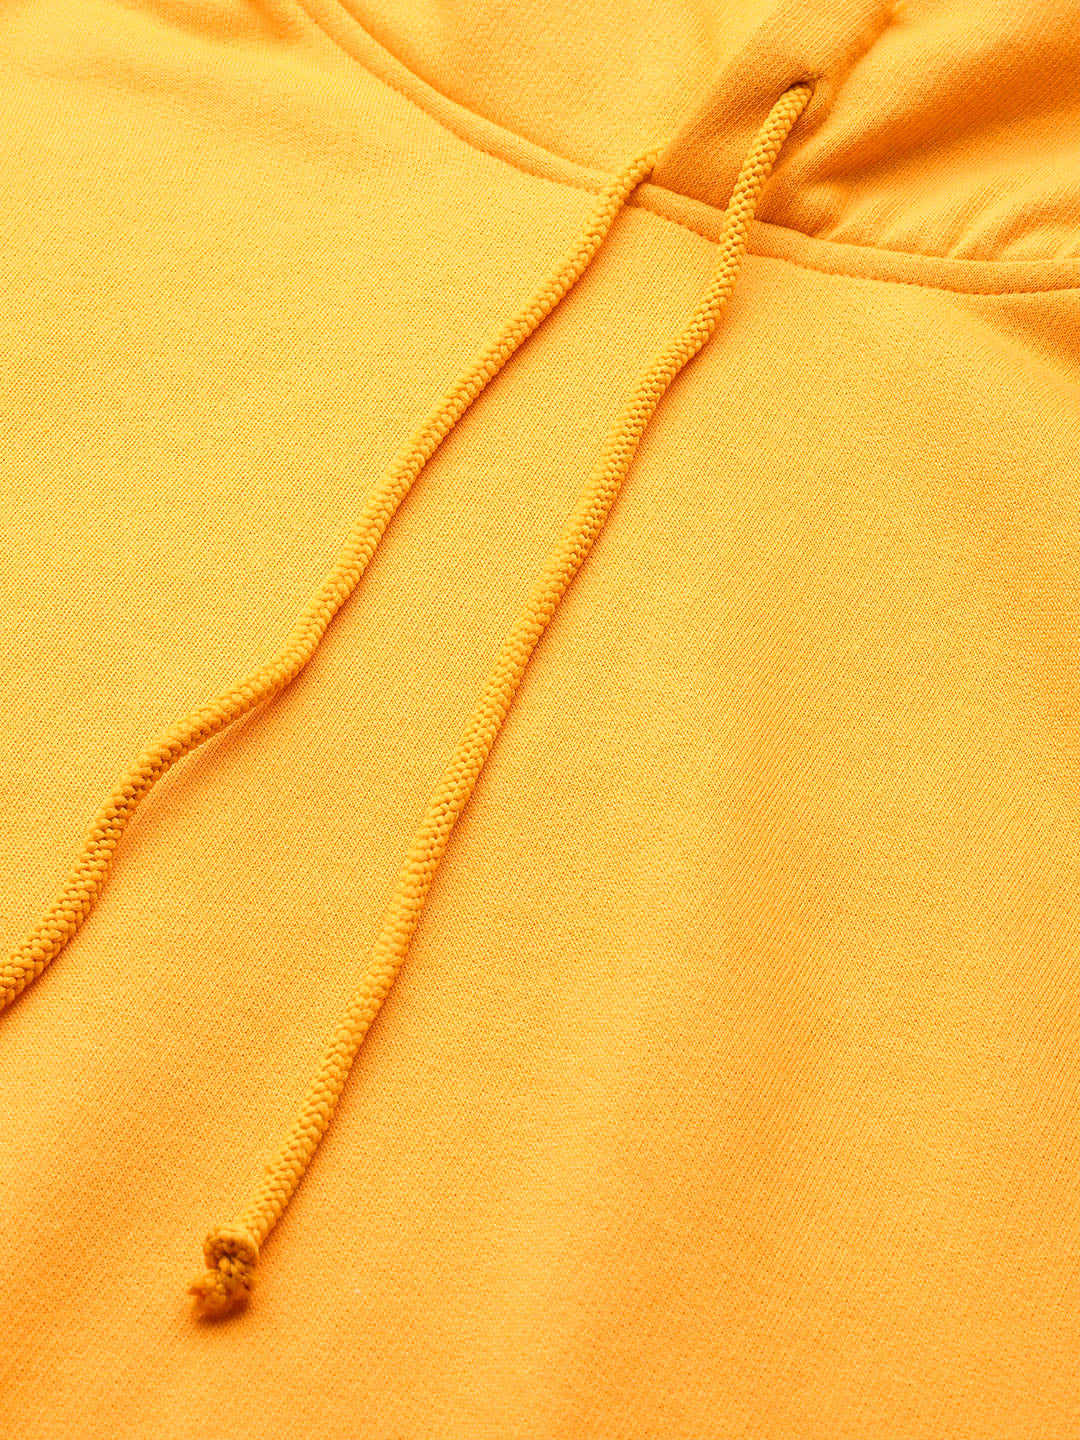 Yellow Hooded Fleece Sweatshirt